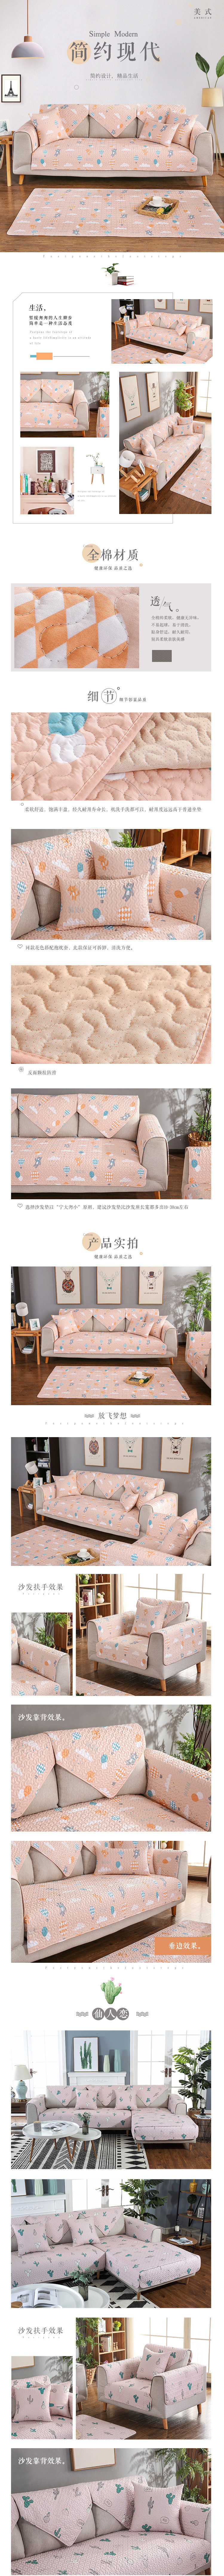 淘宝美工熊本熊现代简约时尚家纺室内沙发设计定制居家生活详情页作品